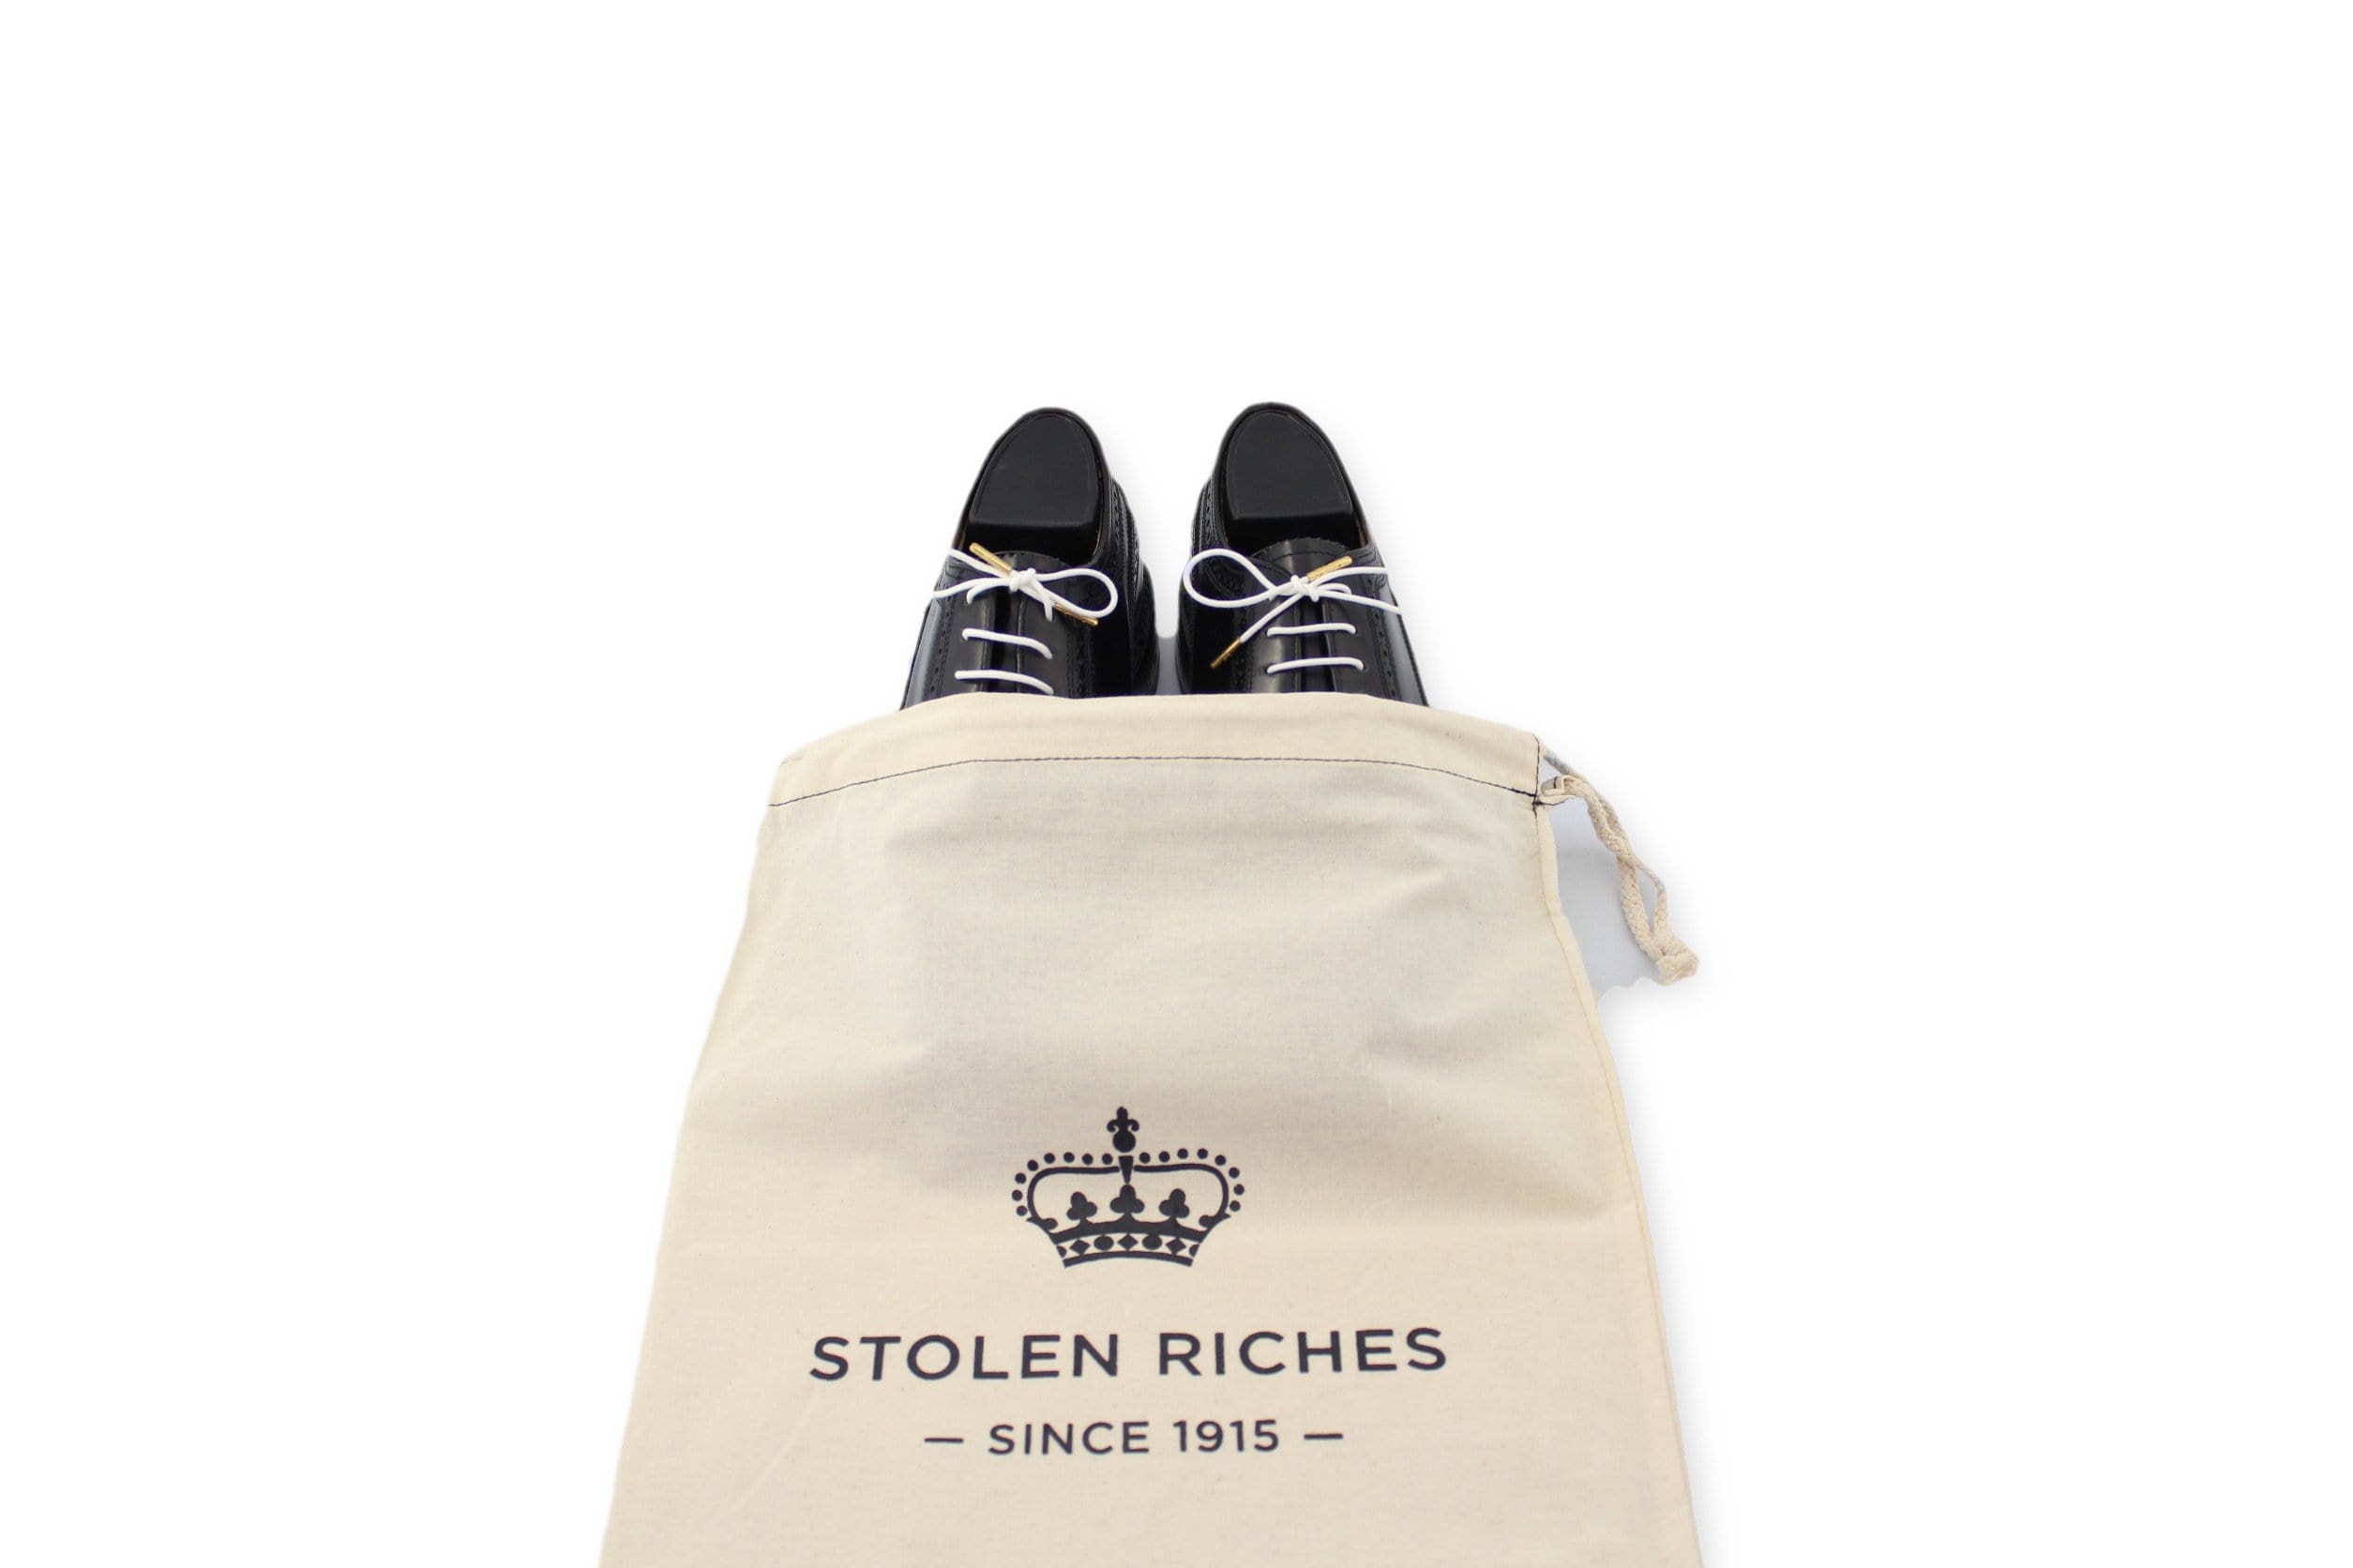 Shoe Bag - Stolen Riches